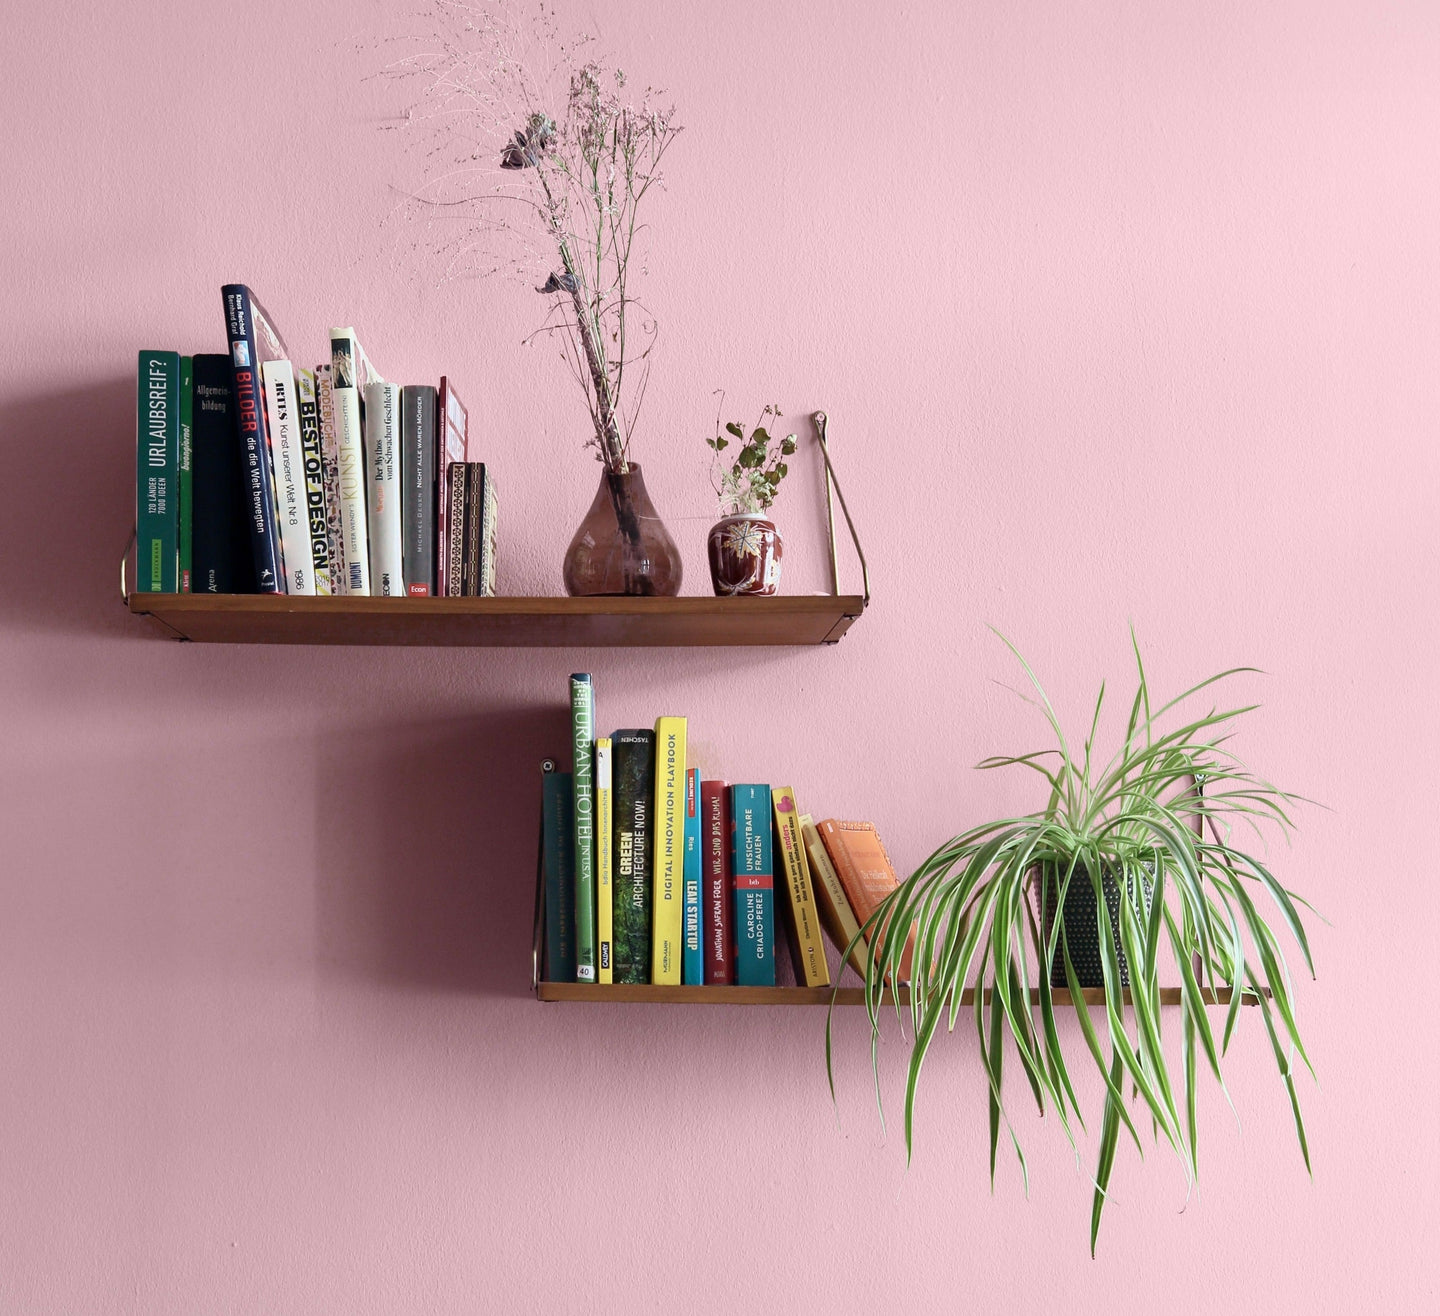 YesColours premium Calming Pink Paint Sample (60ml) Dulux, Coat Paint, Lick Paint, Edward Bulmer